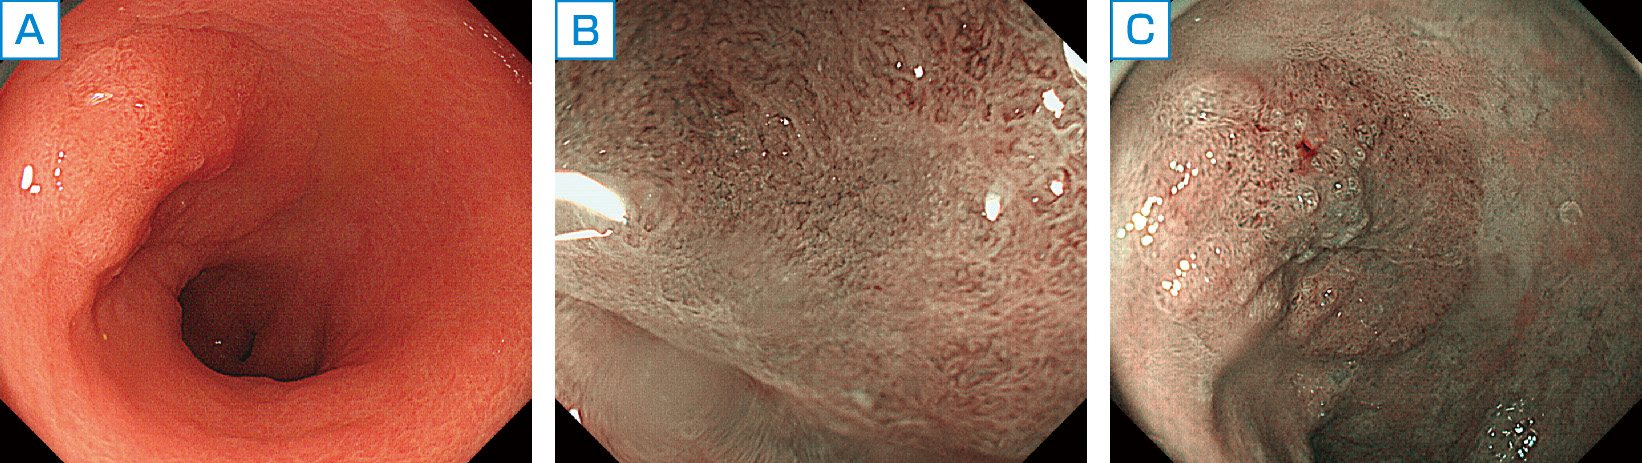 ⓔ図11-4-3　0–Ⅱa型早期胃癌 A：前庭部小弯に浅い隆起がみられる． B：NBI観察像． C：拡大NBI観察では，癌表面の微小血管不整，微小構造不整が認められる．